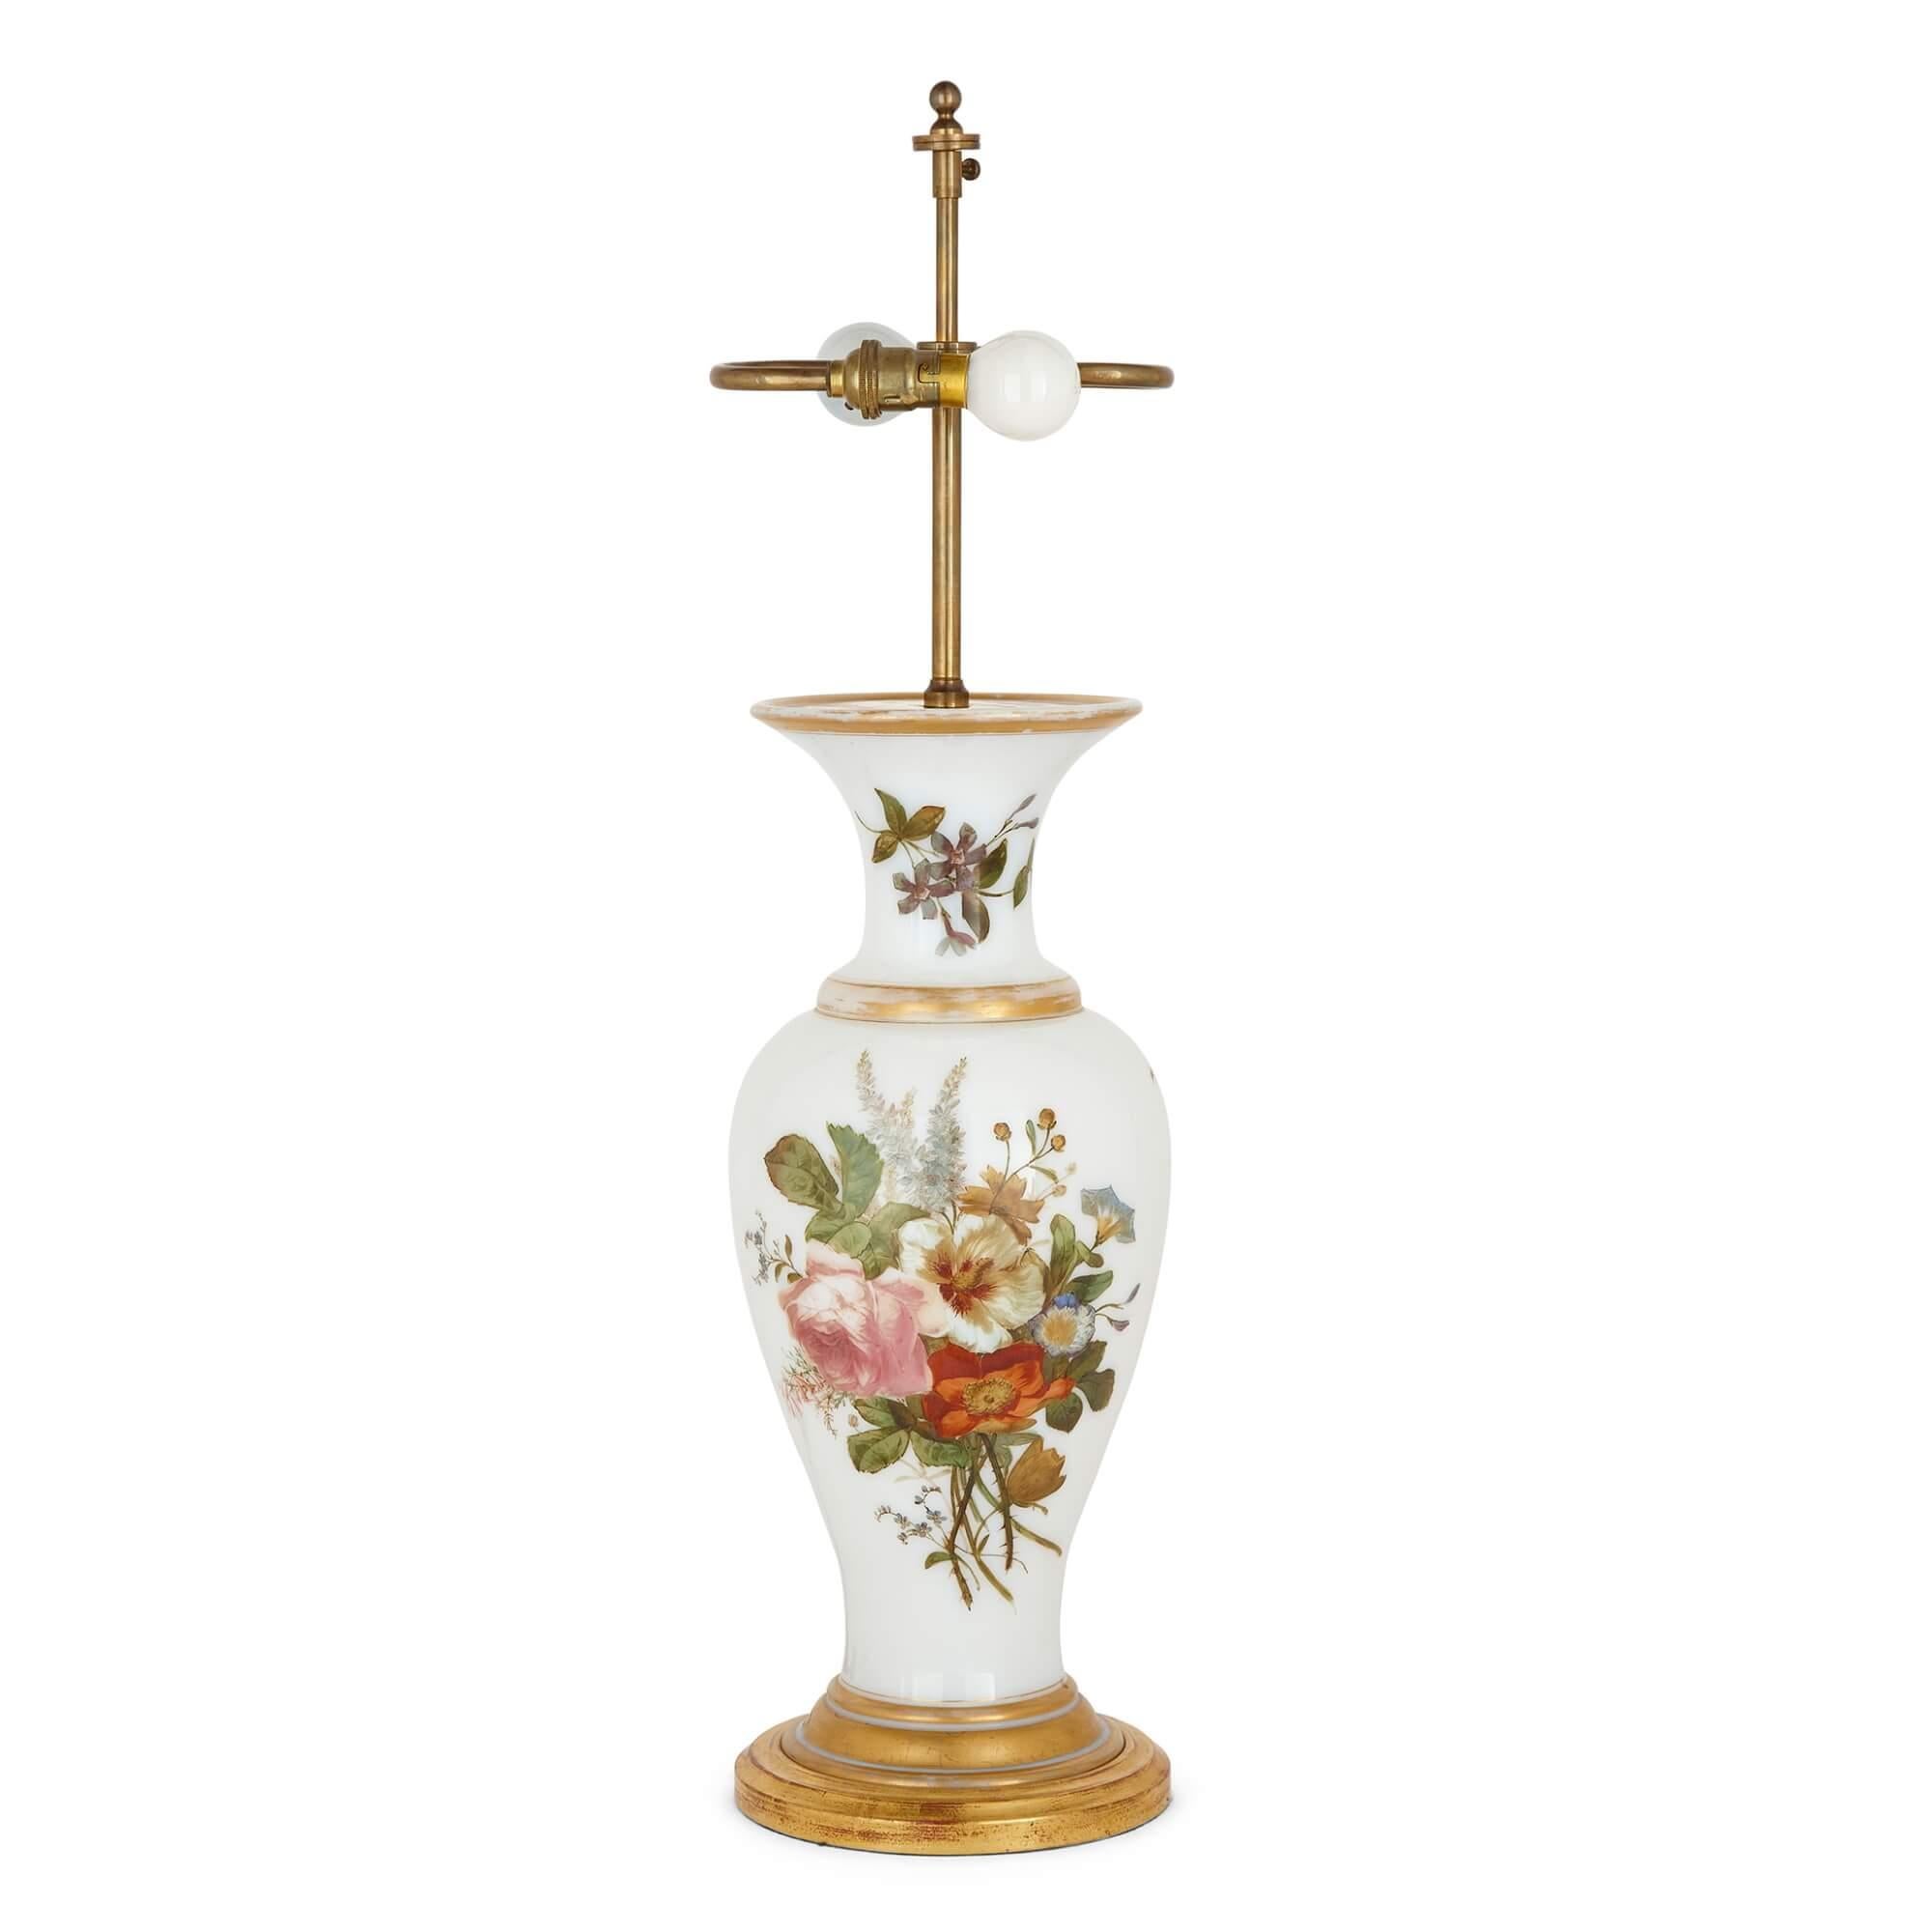 Une lampe en verre opalin de Baccarat, en forme de vase avec un décor floral.
Français, 19ème siècle
Lampe : hauteur 74 cm, diamètre 19 cm
Abat-jour : hauteur 27cm, diamètre 47cm
Hauteur 44,5 cm (sans le support de la lampe)

Originaire de Baccarat,